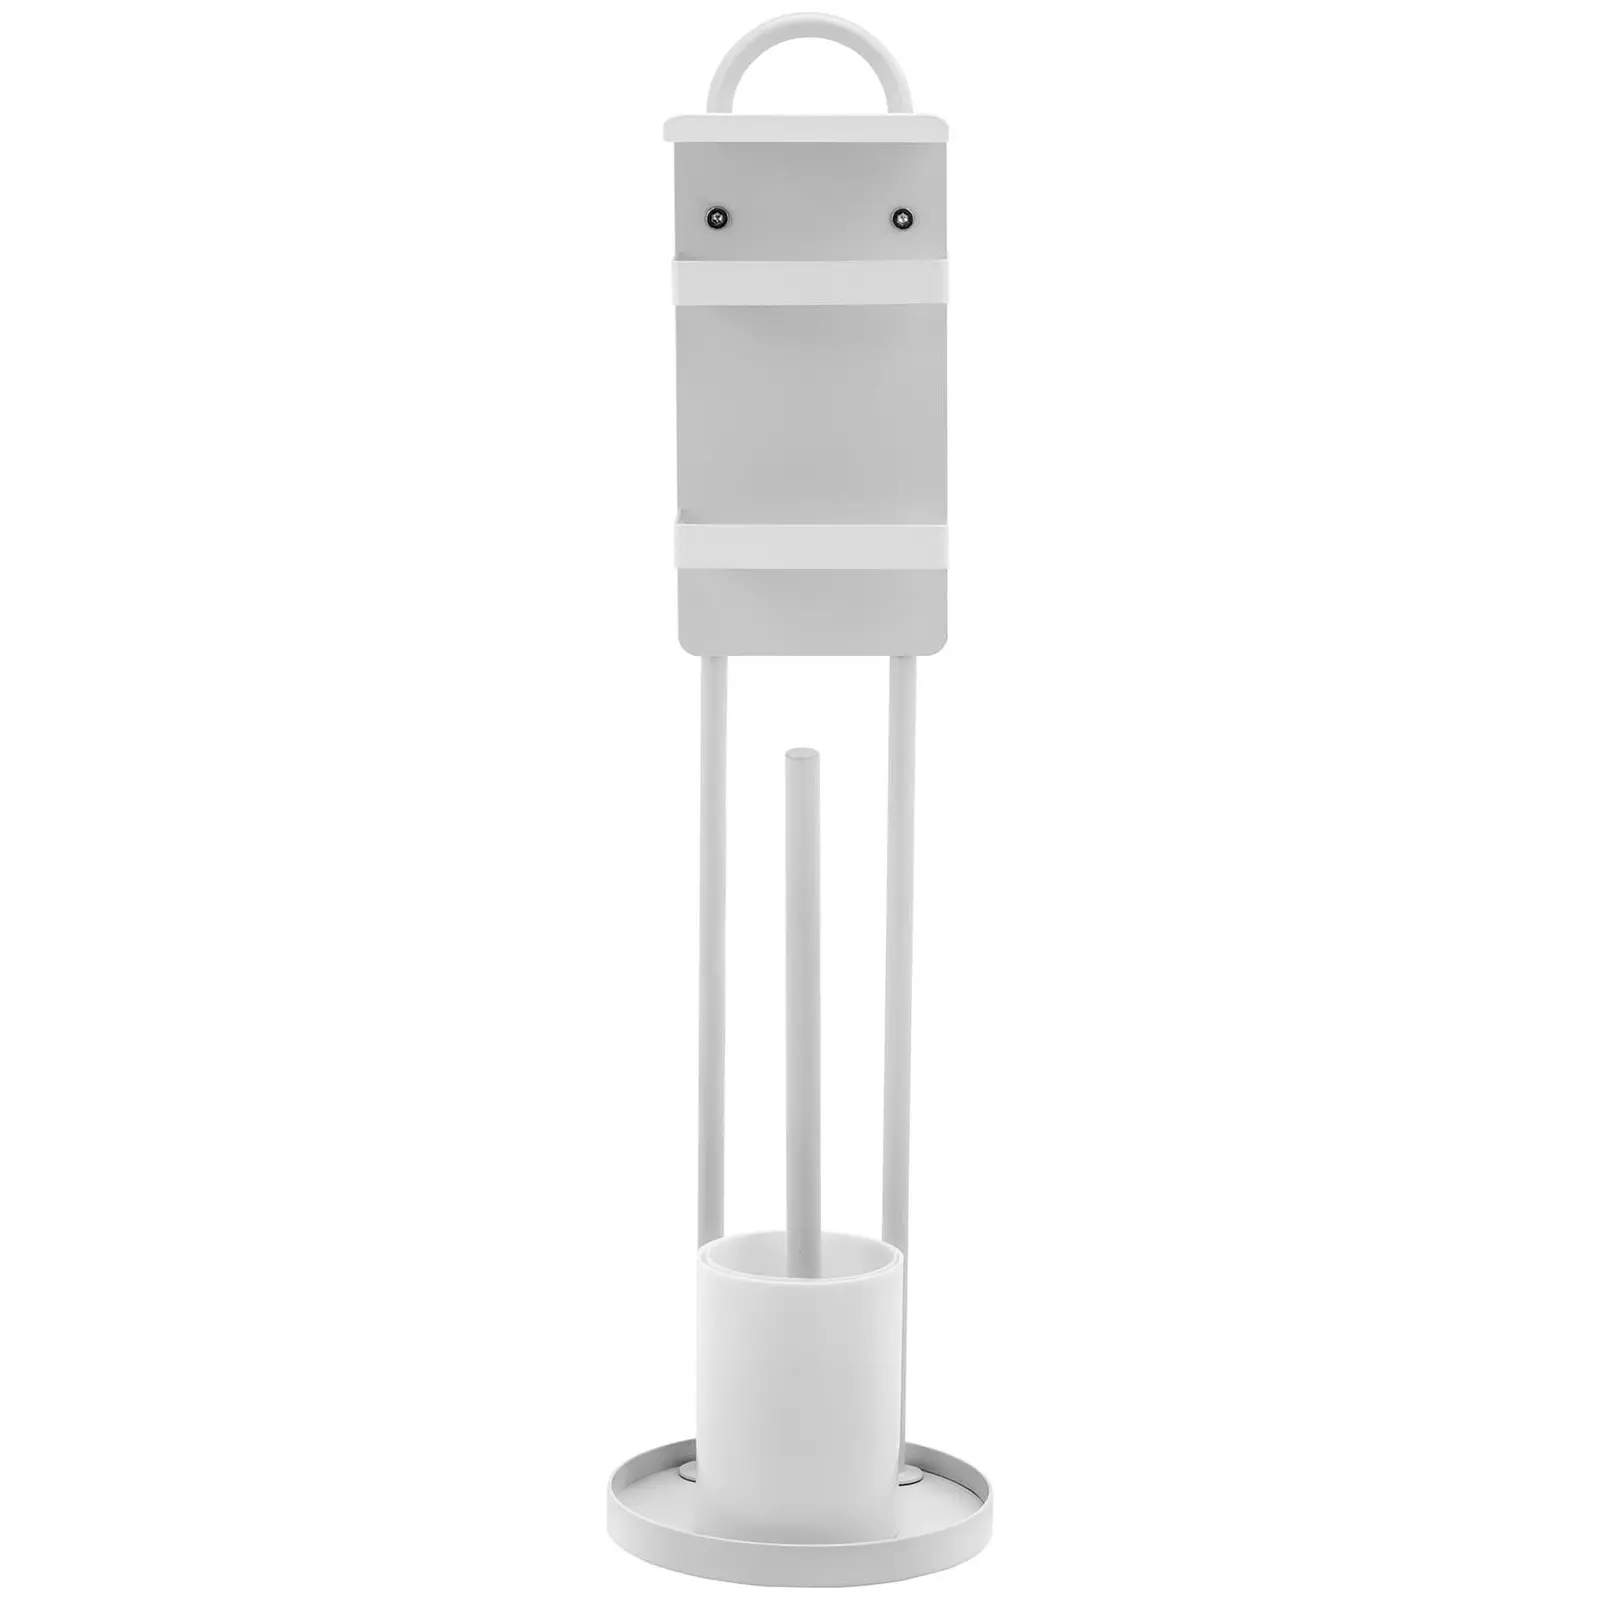 Toiletrulleholder fritstående - 2 ruller - inkl. børste og børsteholder